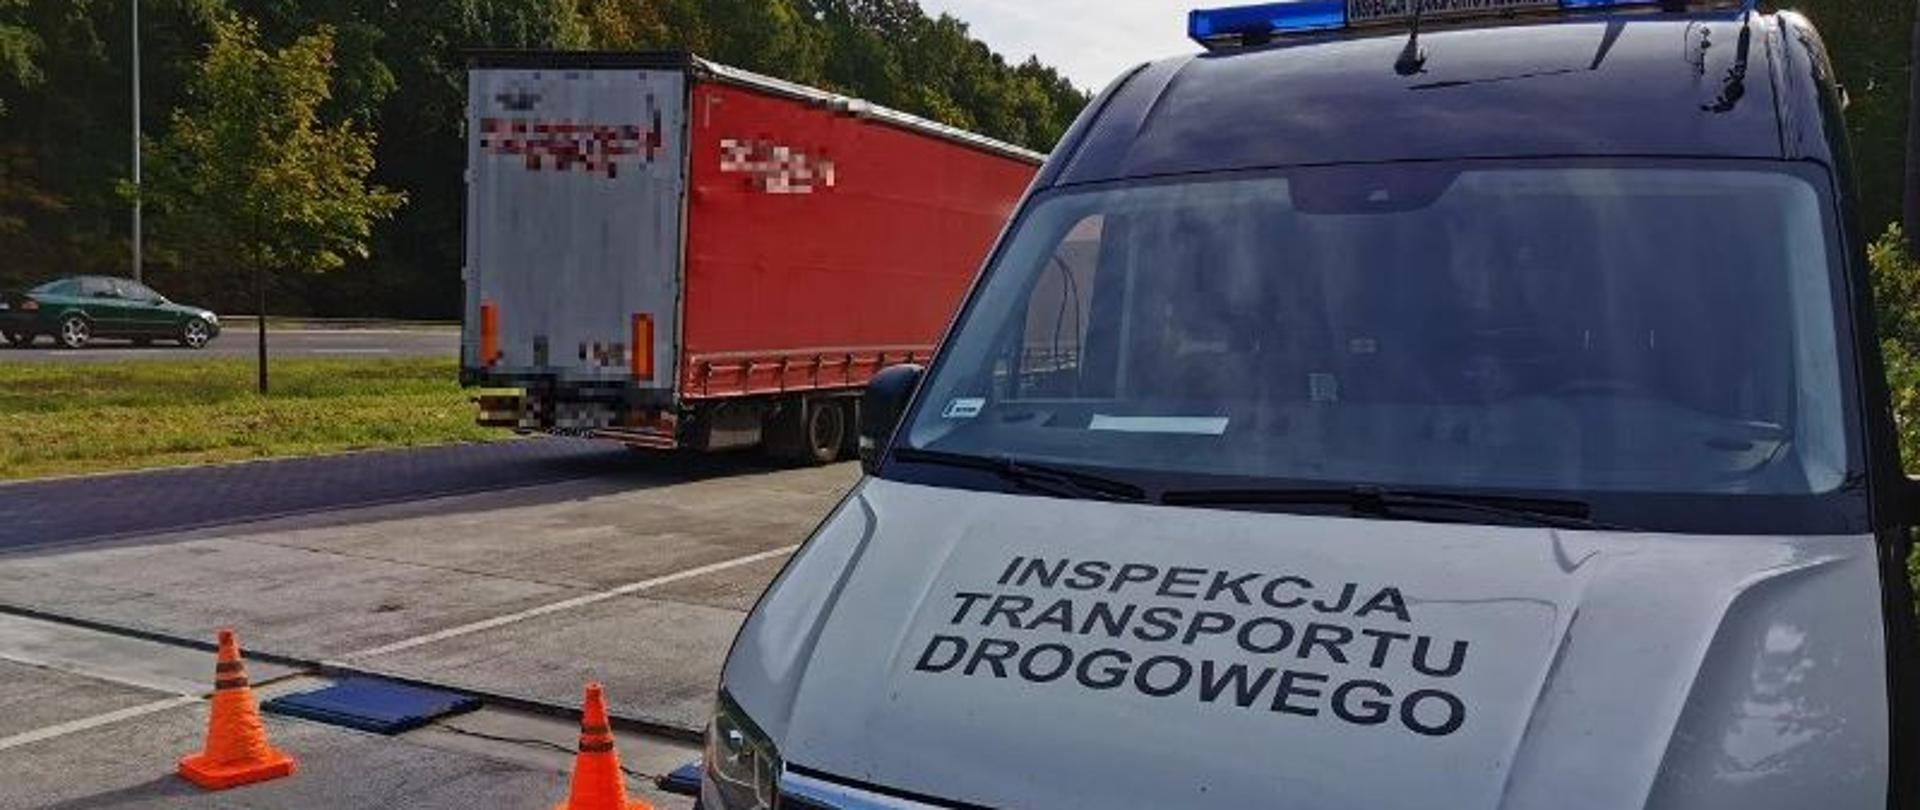 Pojazd członowy, należący do zagranicznego przewoźnika wykonującego międzynarodowy przewóz drogowy rzeczy z Turcji do Polski.